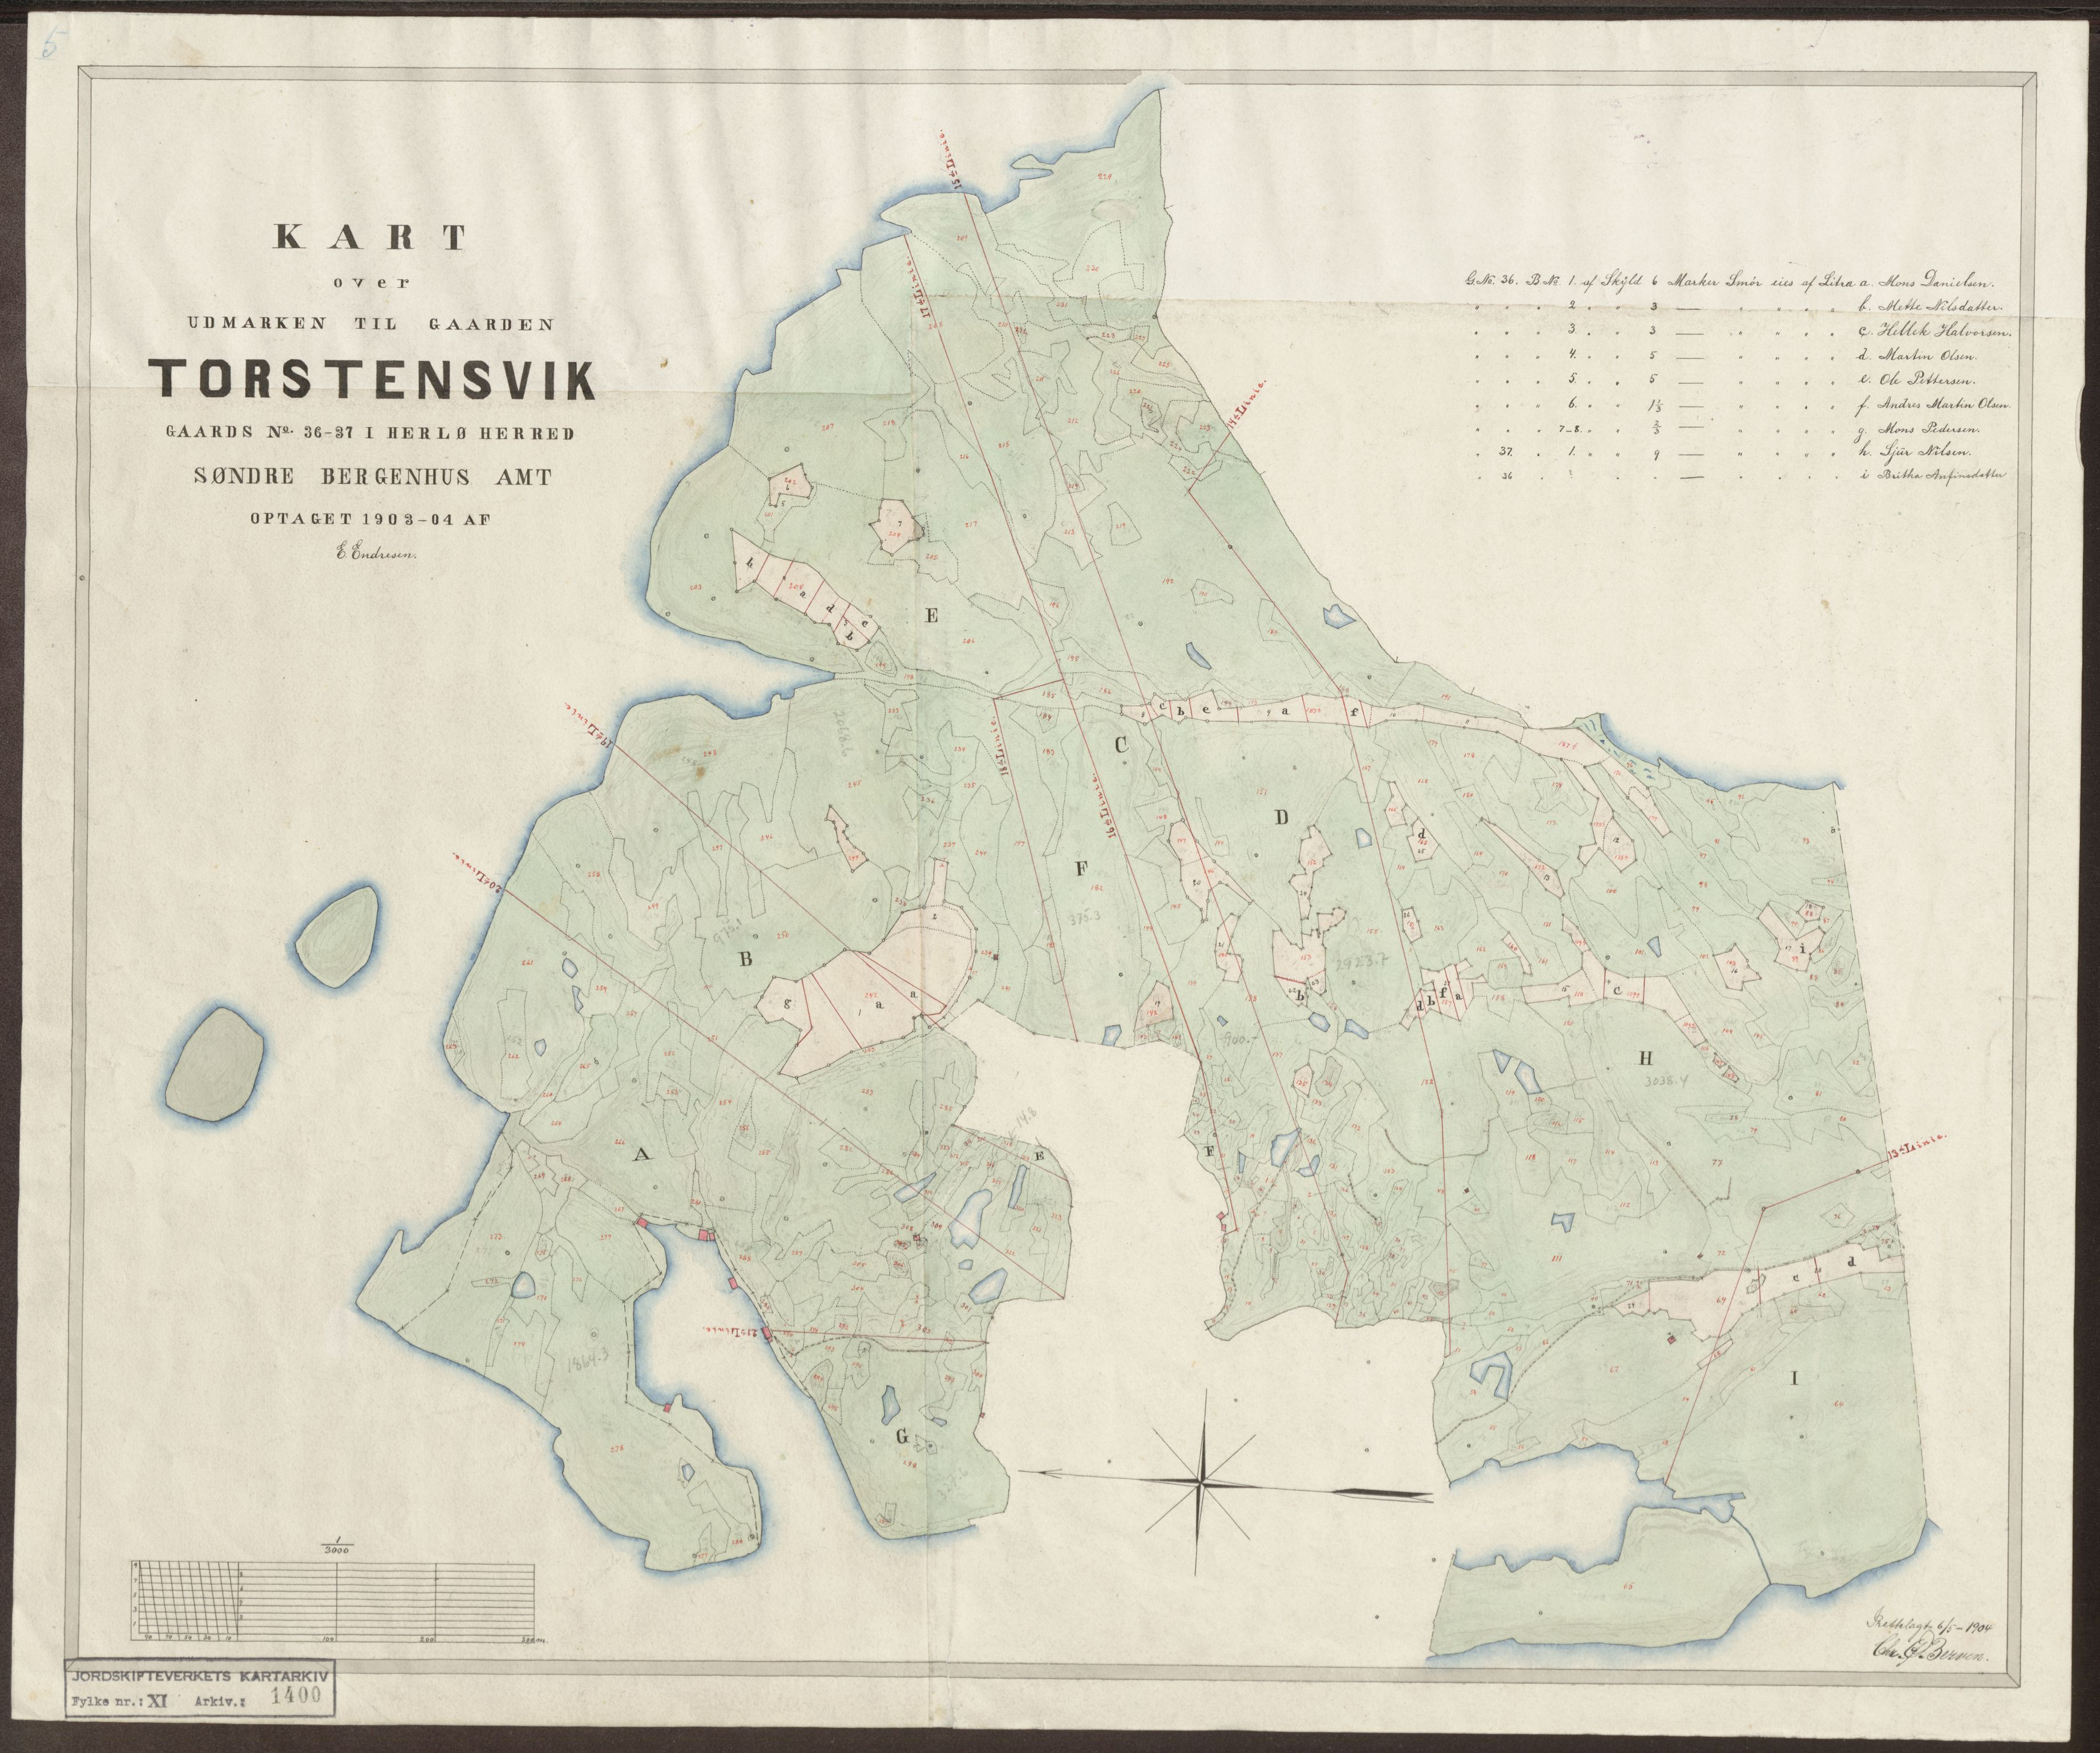 Jordskifteverkets kartarkiv, RA/S-3929/T, 1859-1988, p. 1556